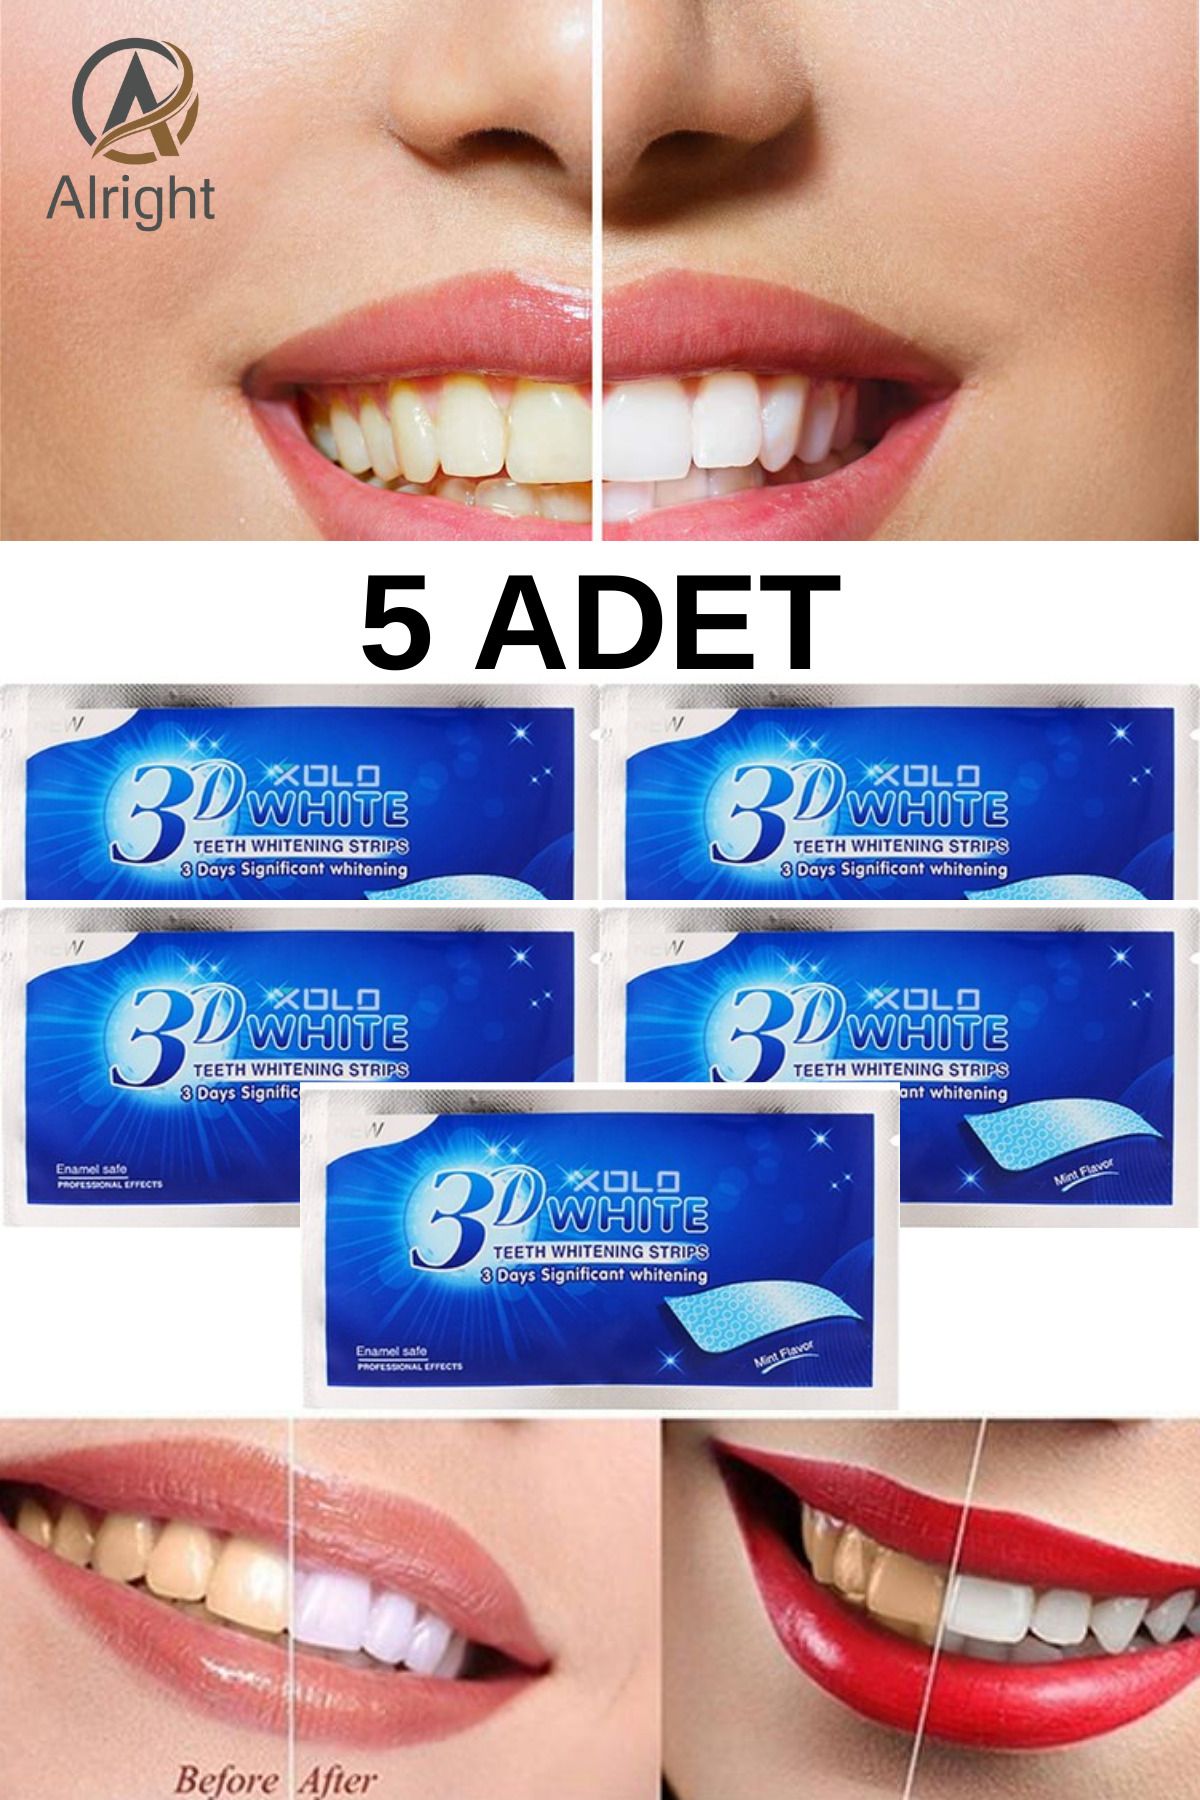 Alright 3D White 5 Adet Diş Beyazlatma Bandı Anında Beyazlama (Teeth Whitening Strip)